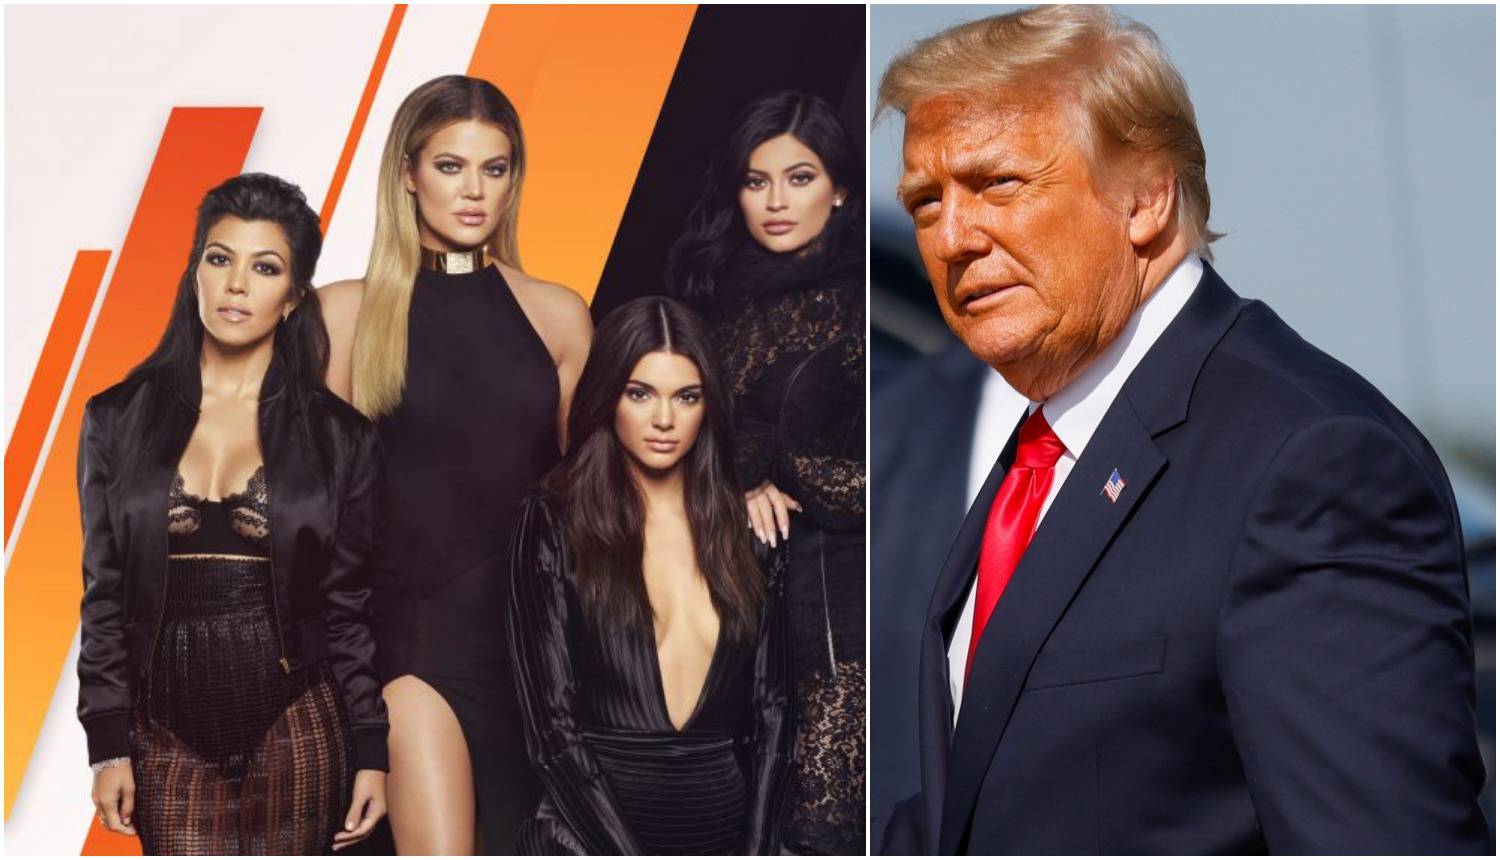 Trump ima savršene glumce za snimanje realityja: 'Pa to će biti još luđe od ovih Kardashianki'